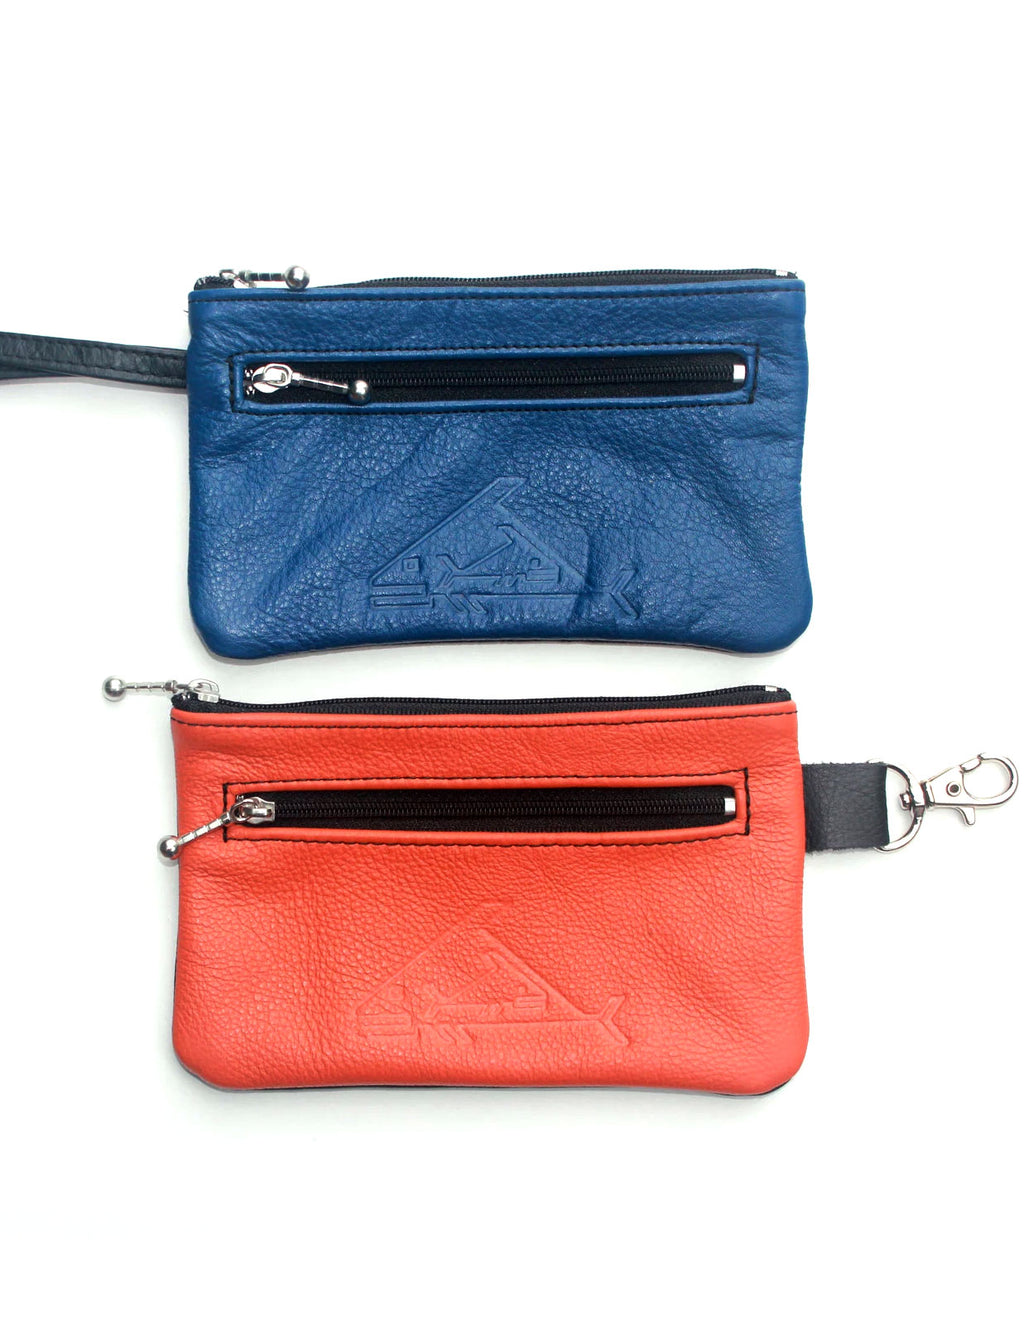 6" Wristlet or Wallet Bag with Snap Hook - Indian Summer's designer leather purses